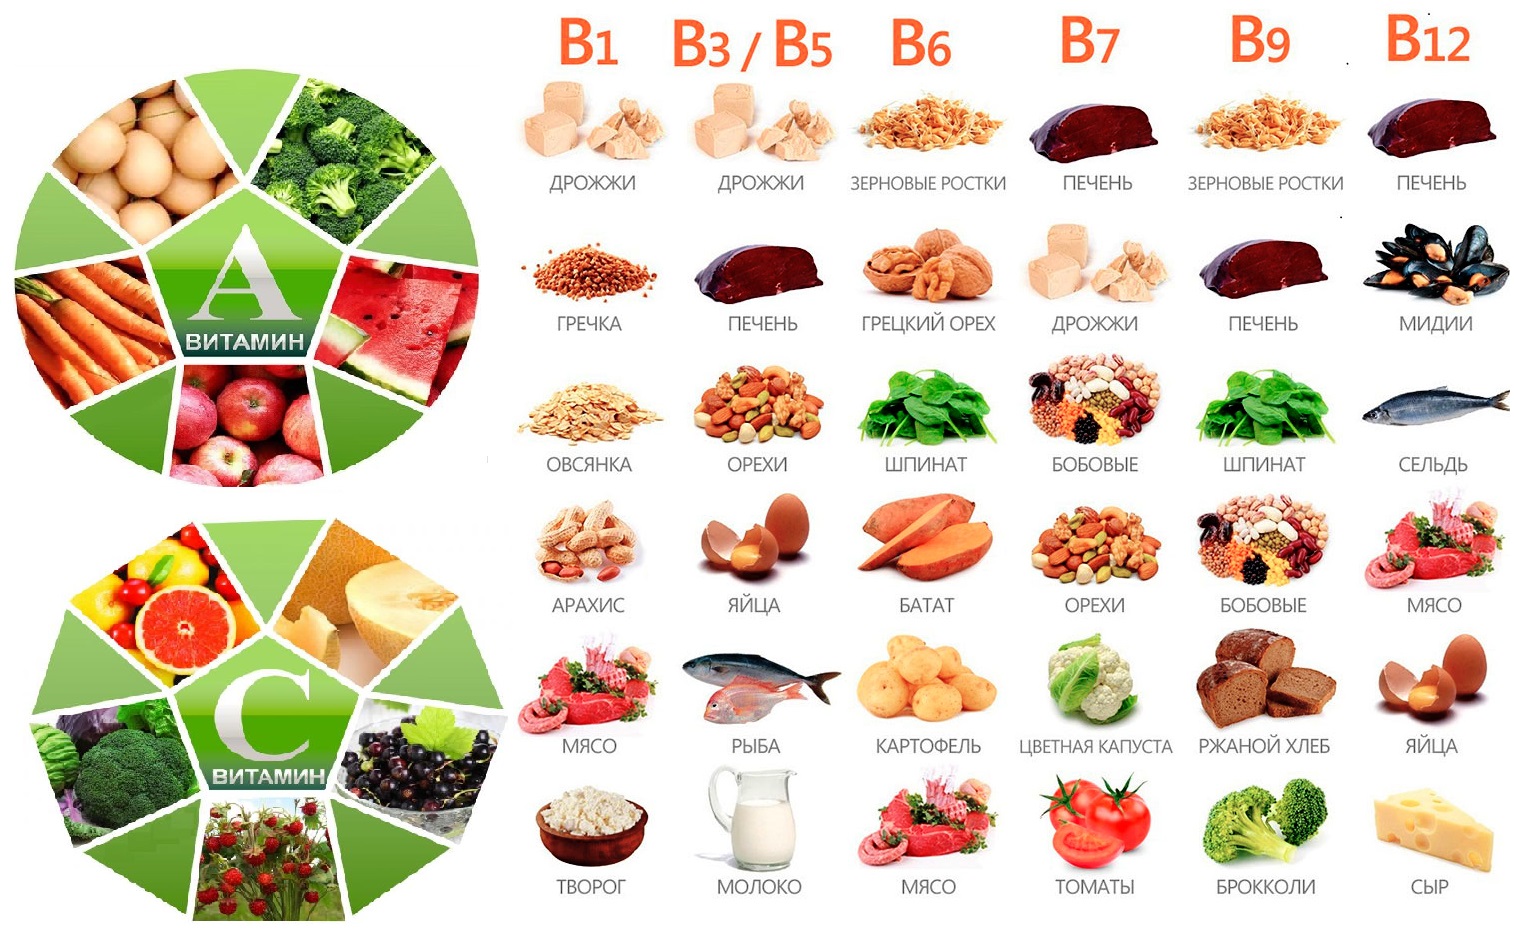 Питание б группа. Продукты содержащие витамин b. Витамин b в каких продуктах содержится больше. Витамины группы в в продуктах. Продукты с витамином б.